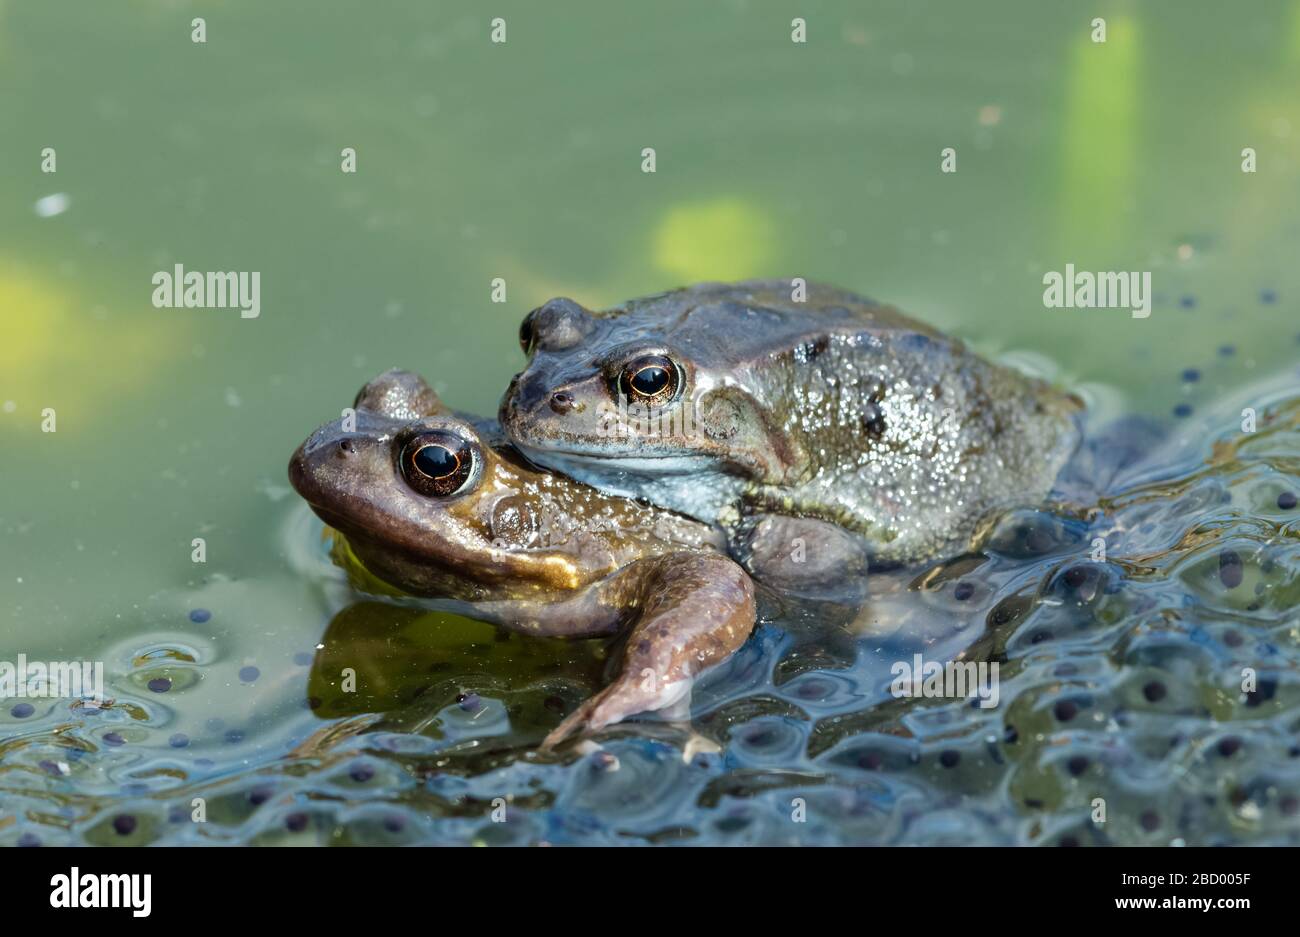 Ranas. Dos ranas comunes de jardín (nombre científico: Rana temporaria) apareándose en un estanque de jardín, rodeado de frogspawn. Primeras señales de la primavera. Mirando a la izquierda Foto de stock